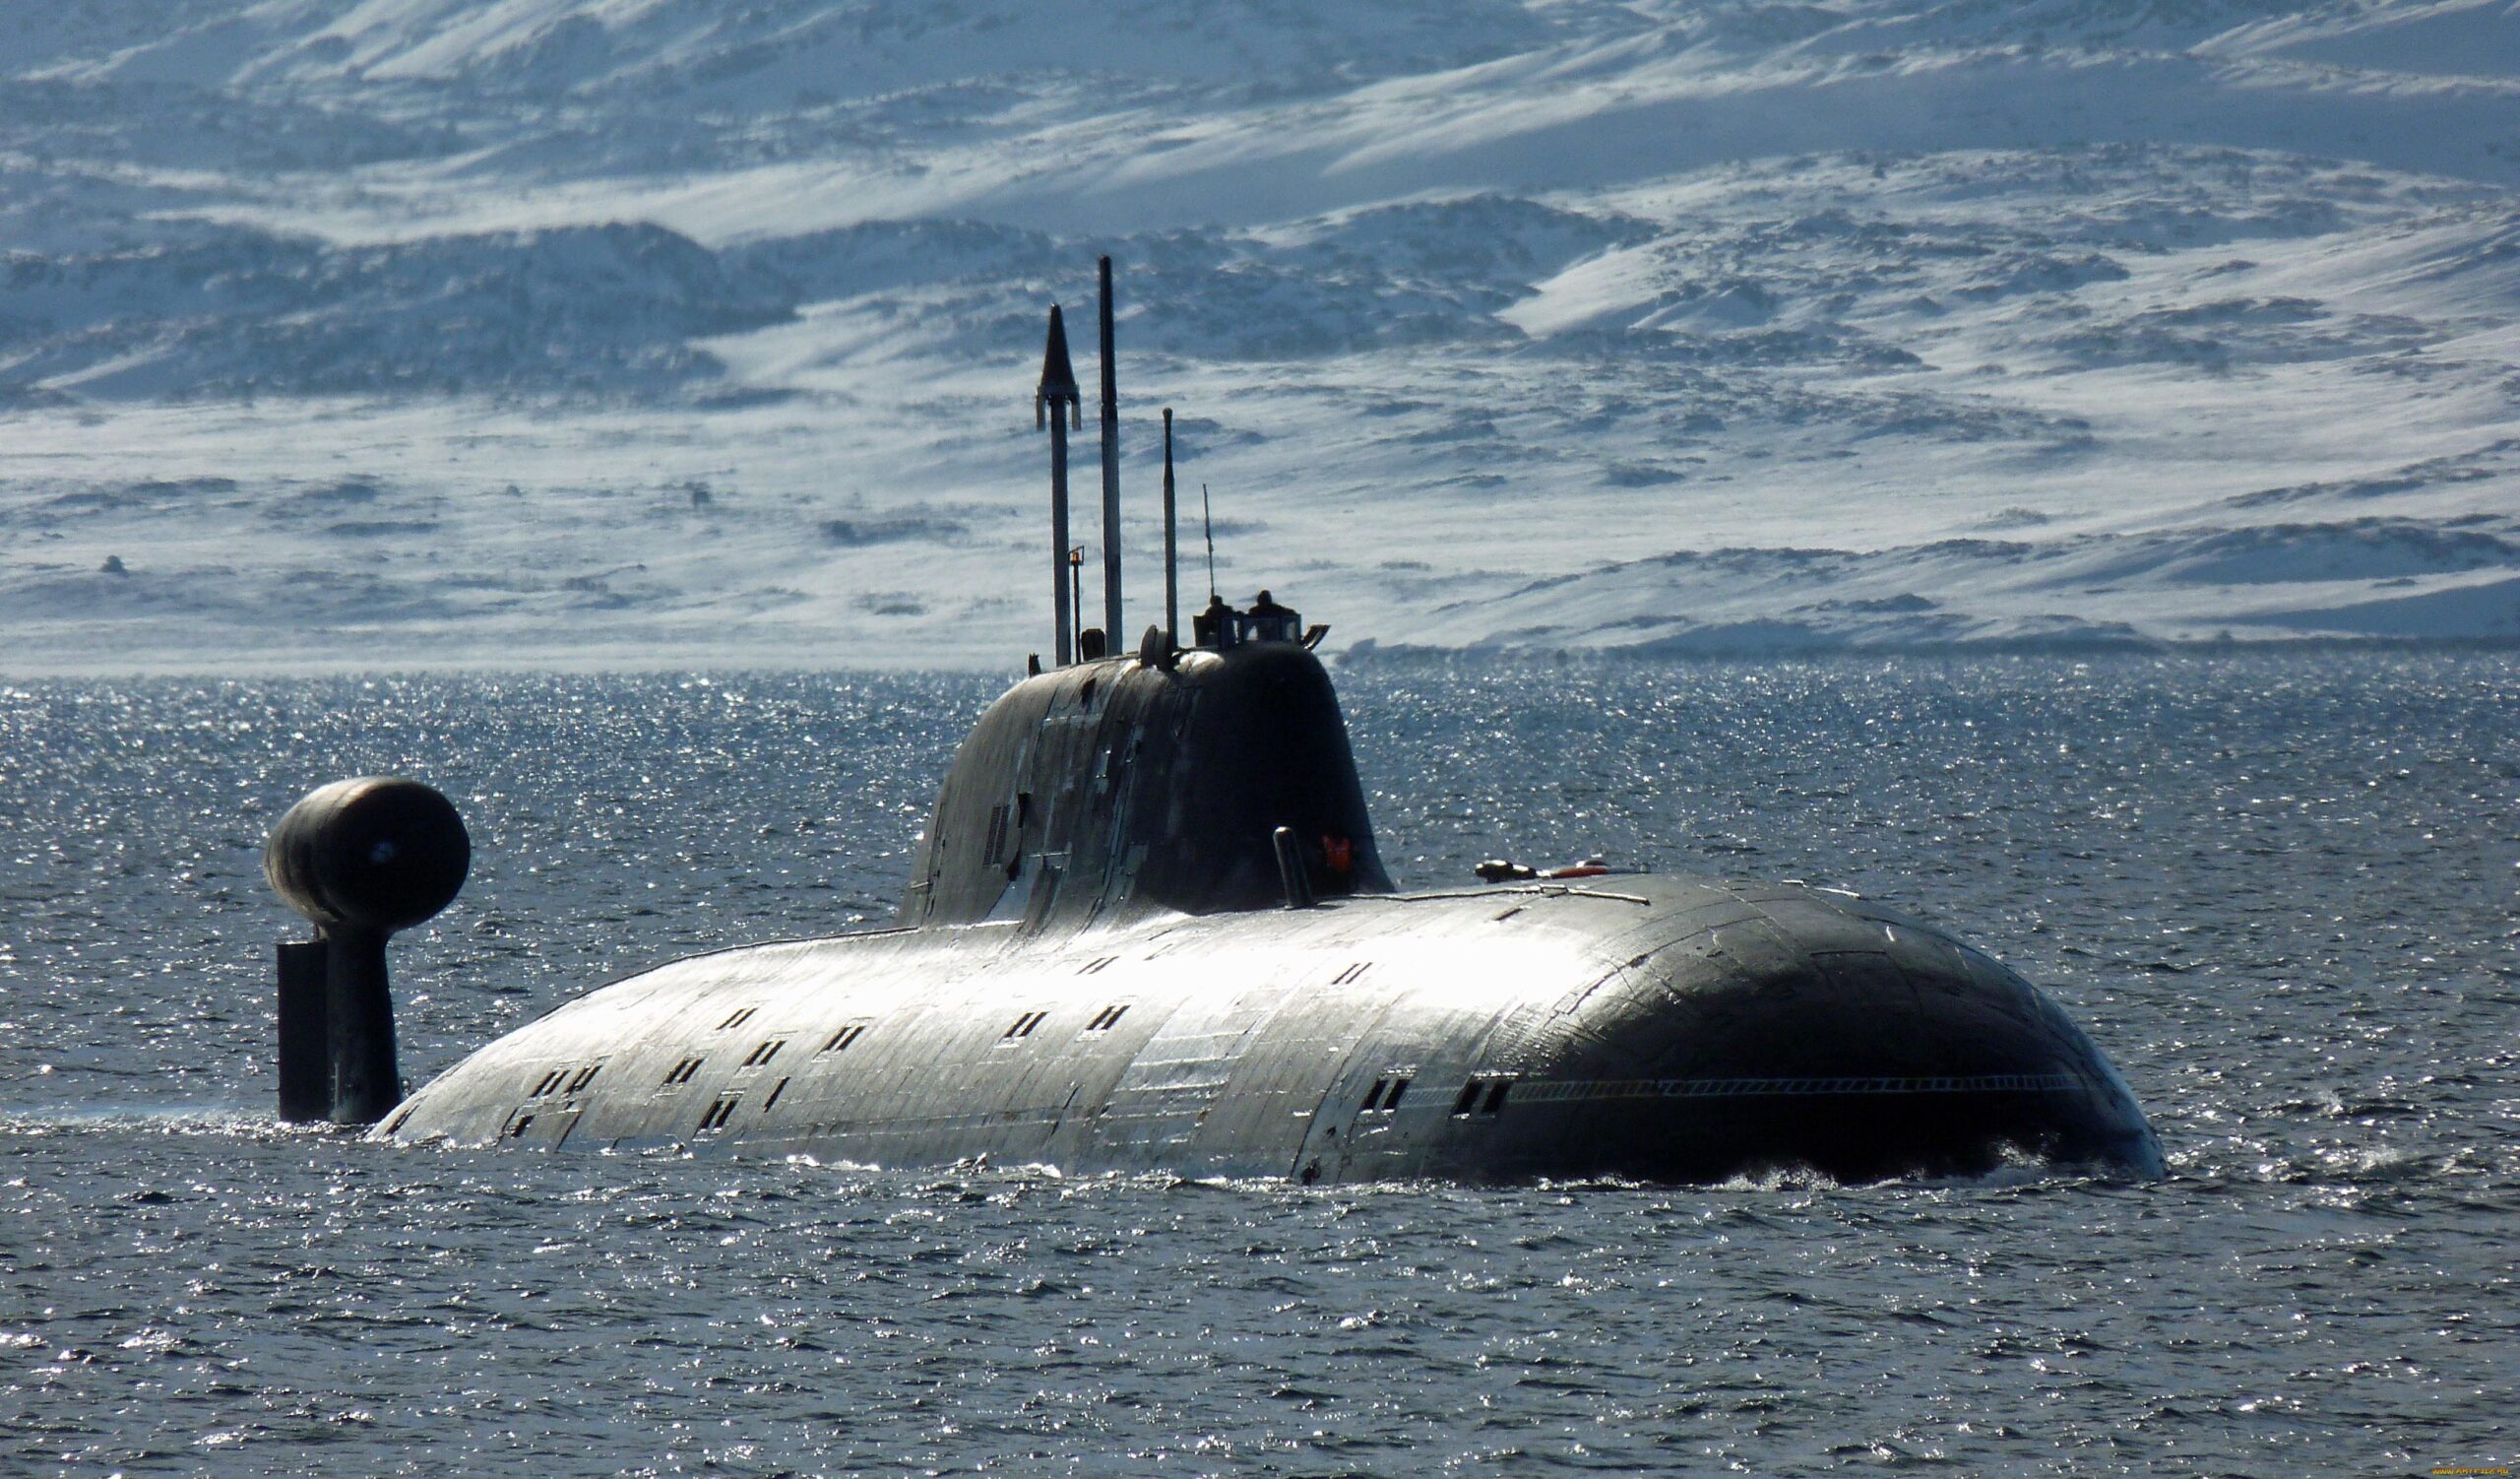 Sottomarini russi moderni: osservazione, caratteristiche, prospettive.